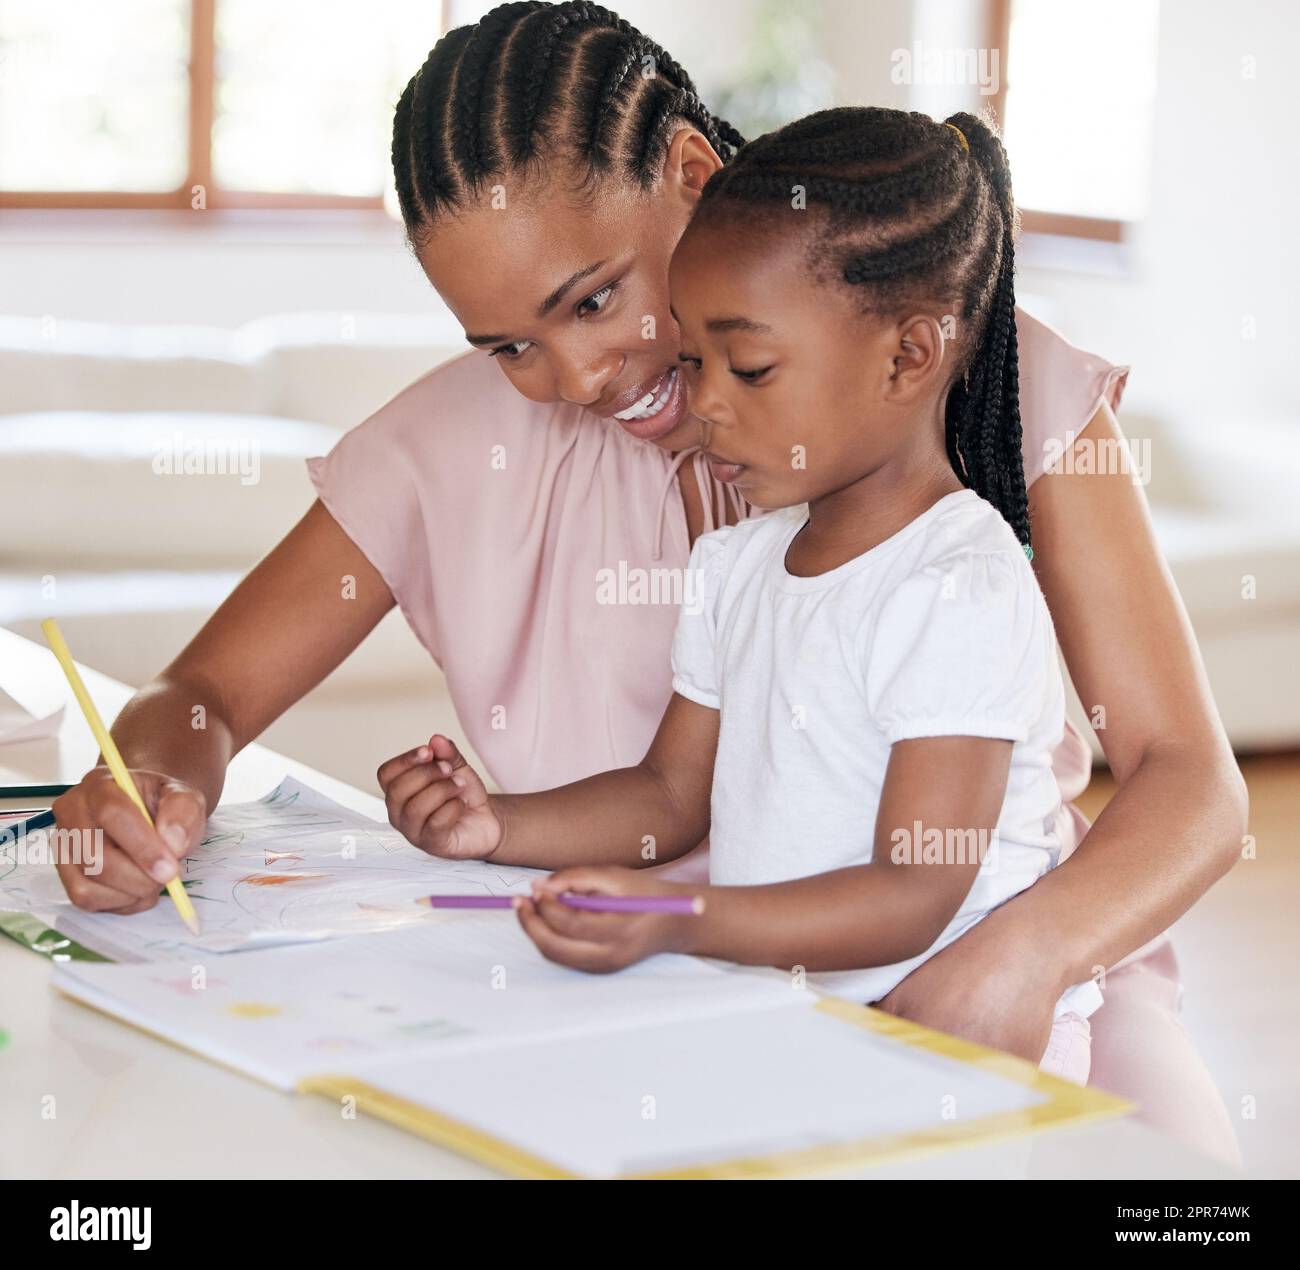 Junge afroamerikanische Mutter, die ihrer Tochter bei Hausaufgaben zu Hause hilft. Ein kleines Mädchen malt mit ihrer mutter zu Hause. Schwarze Frau zeigt ihrer Tochter, wie man schreibt. Ein kleines Mädchen, das Zeichnen lernt Stockfoto